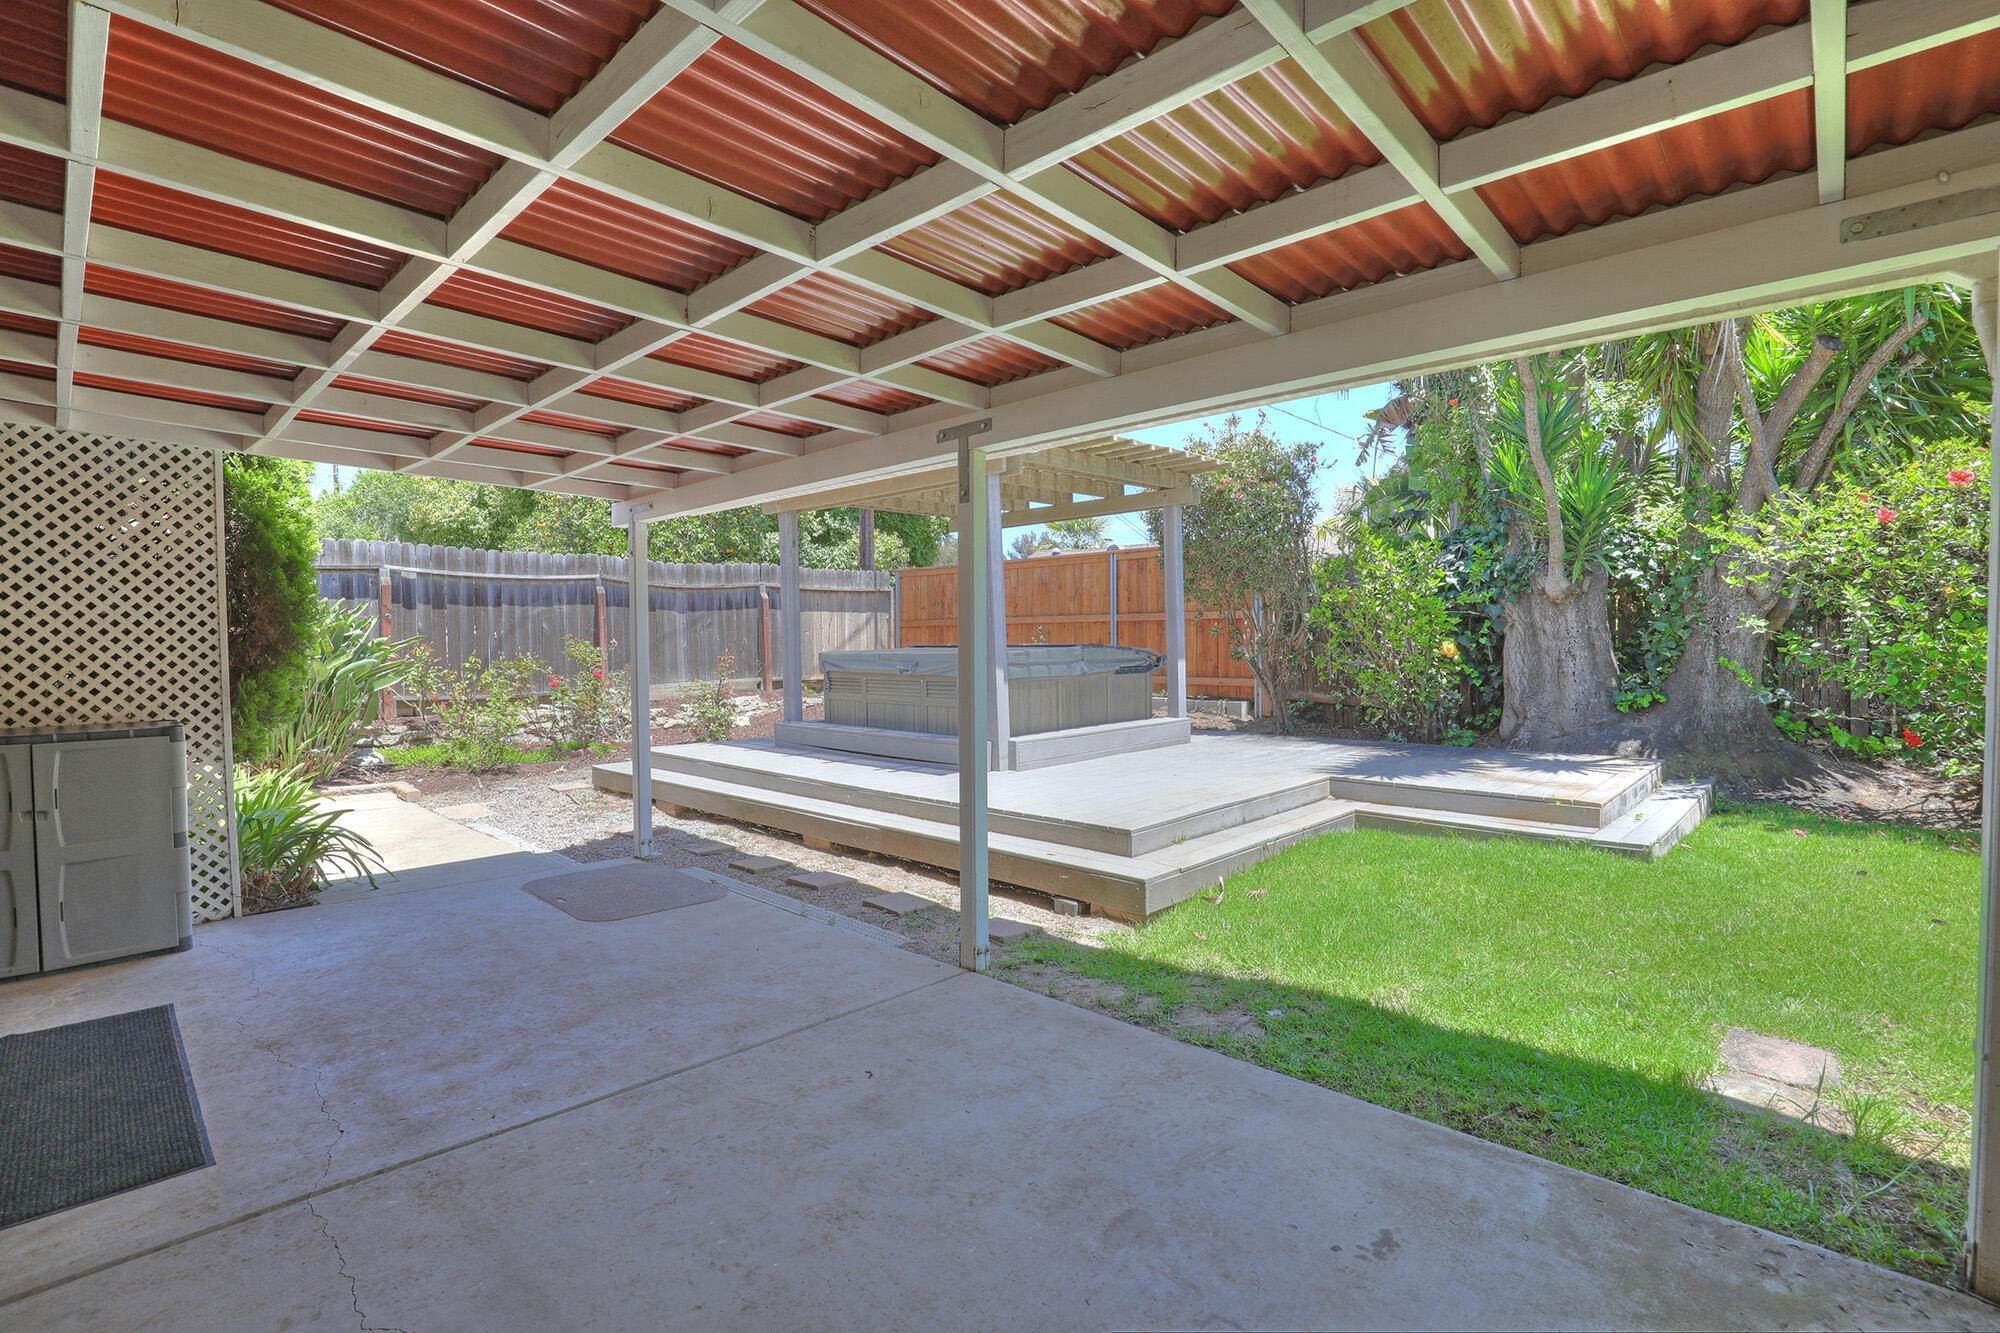 20. Estate for Sale at 236 Palo Alto Drive Goleta, California 93117 United States